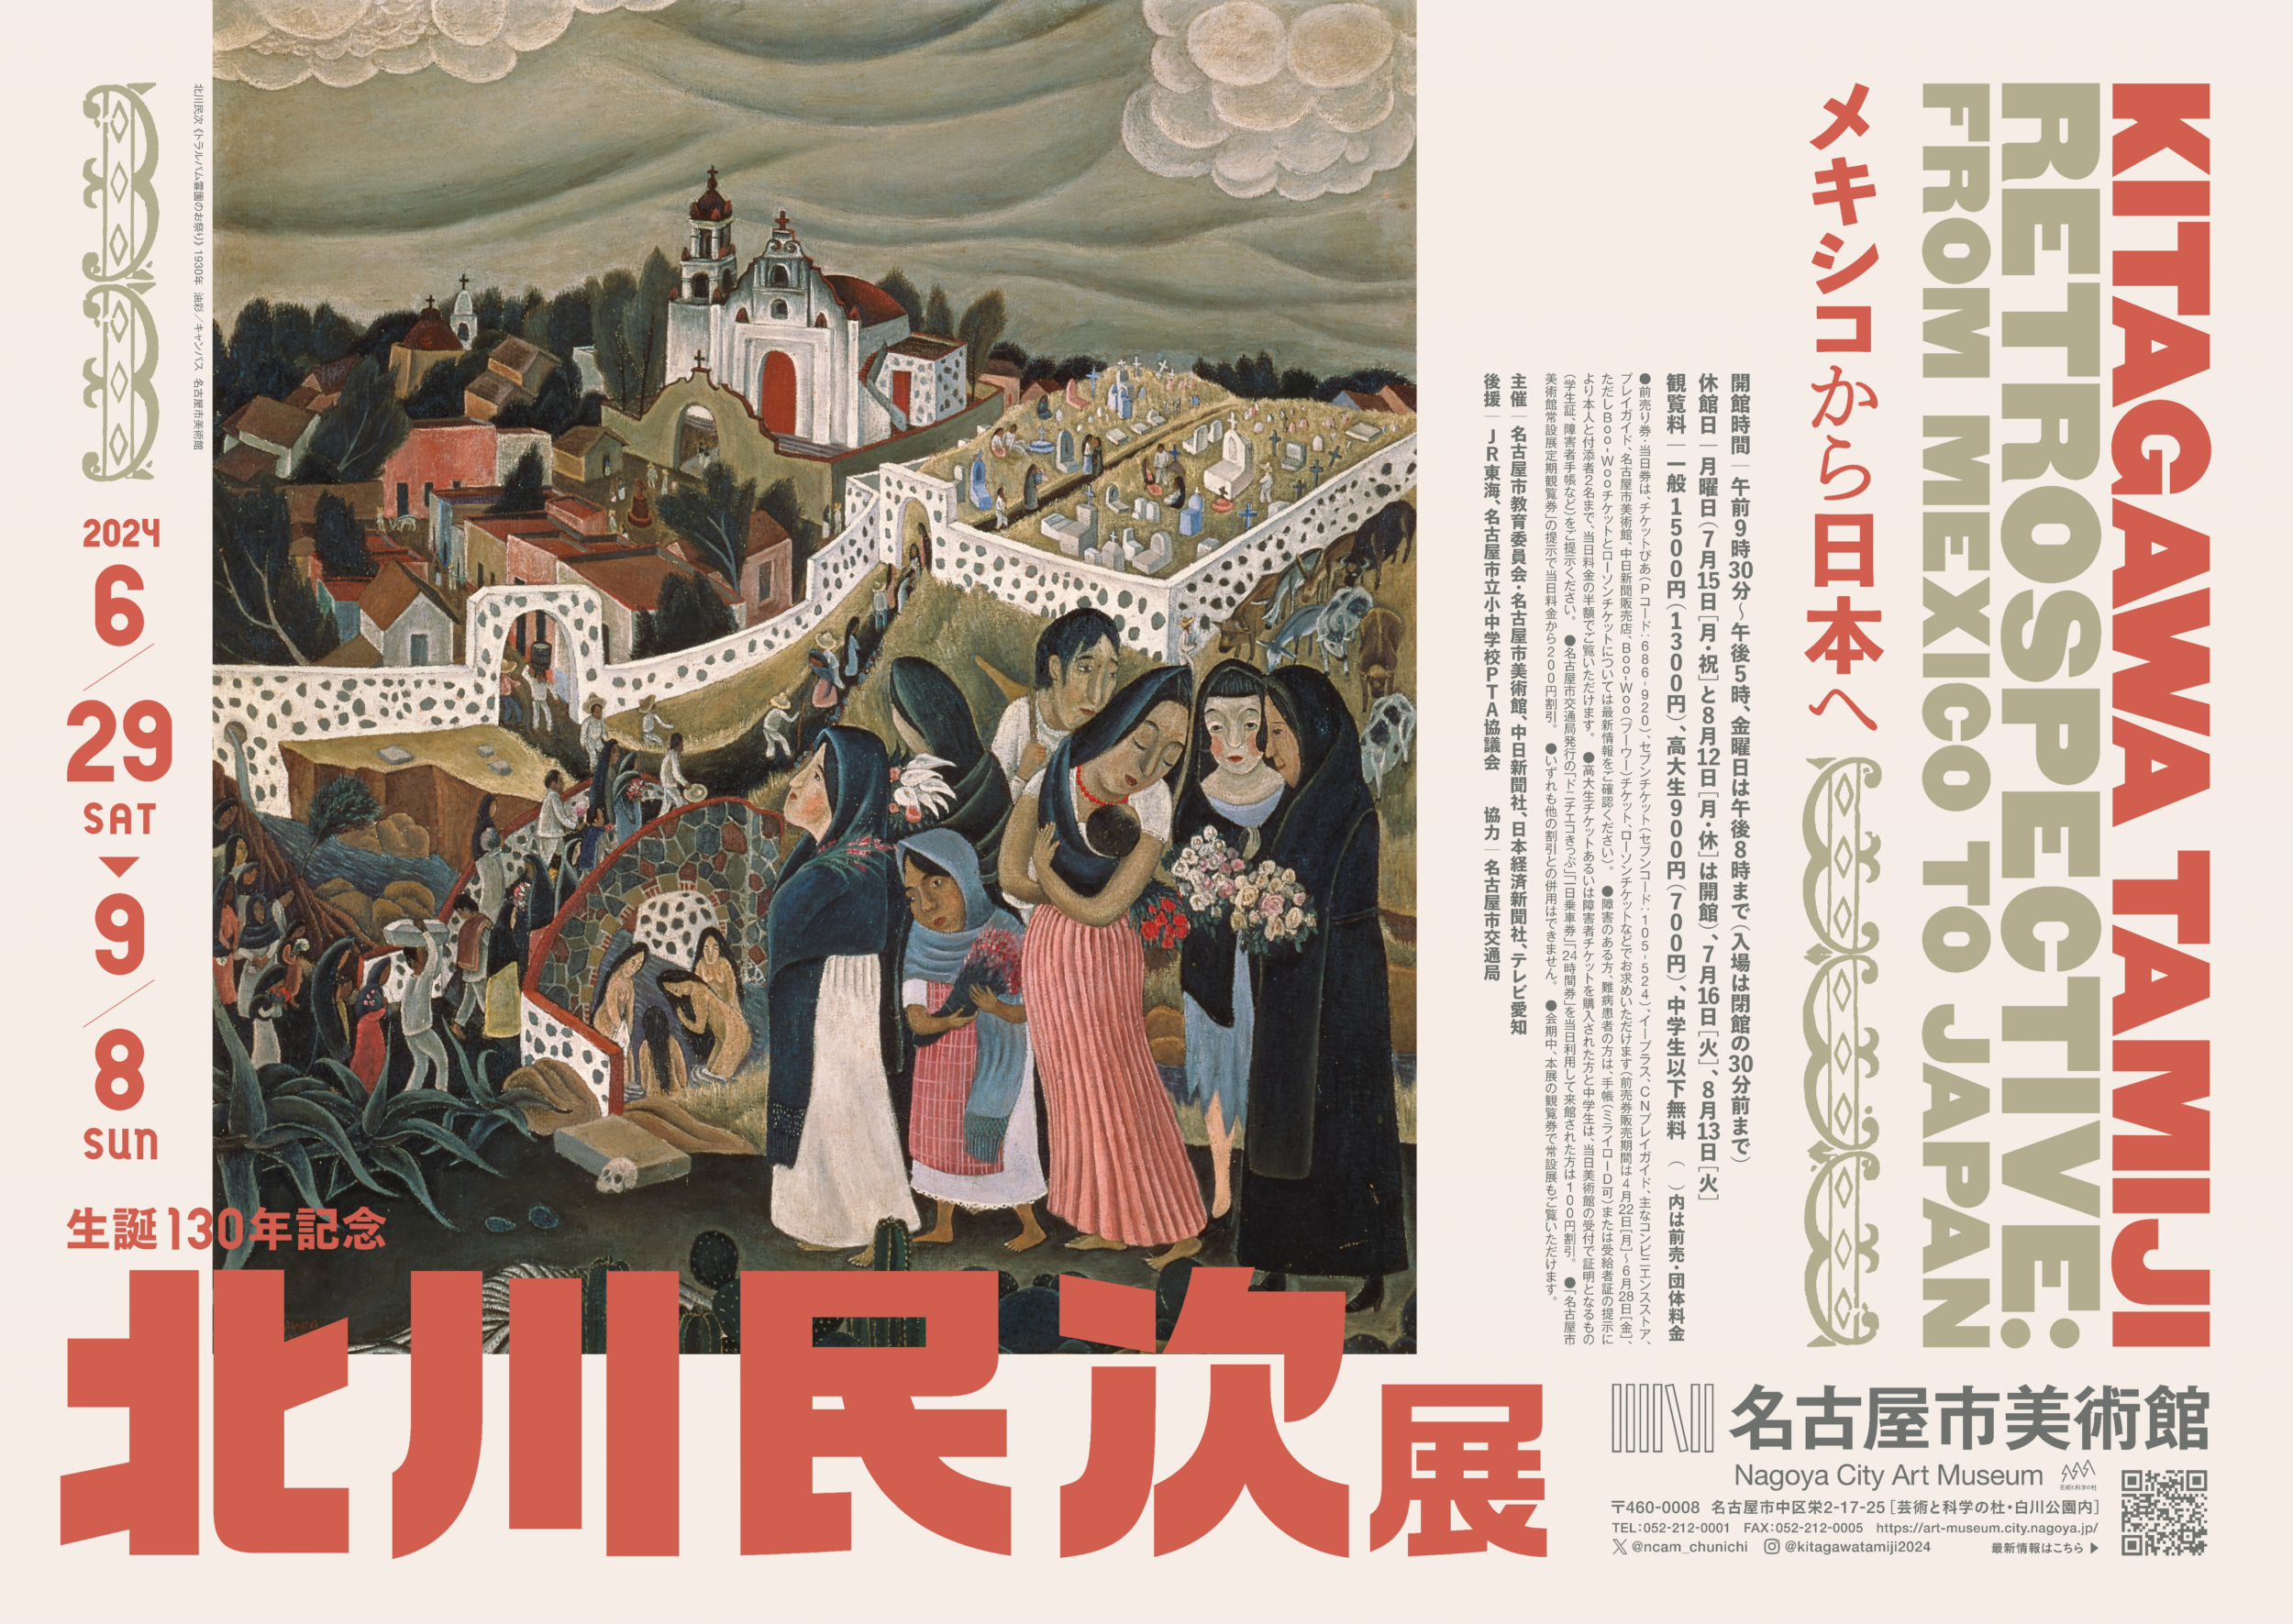 特別展　生誕130年記念　北川民次展―メキシコから日本へ